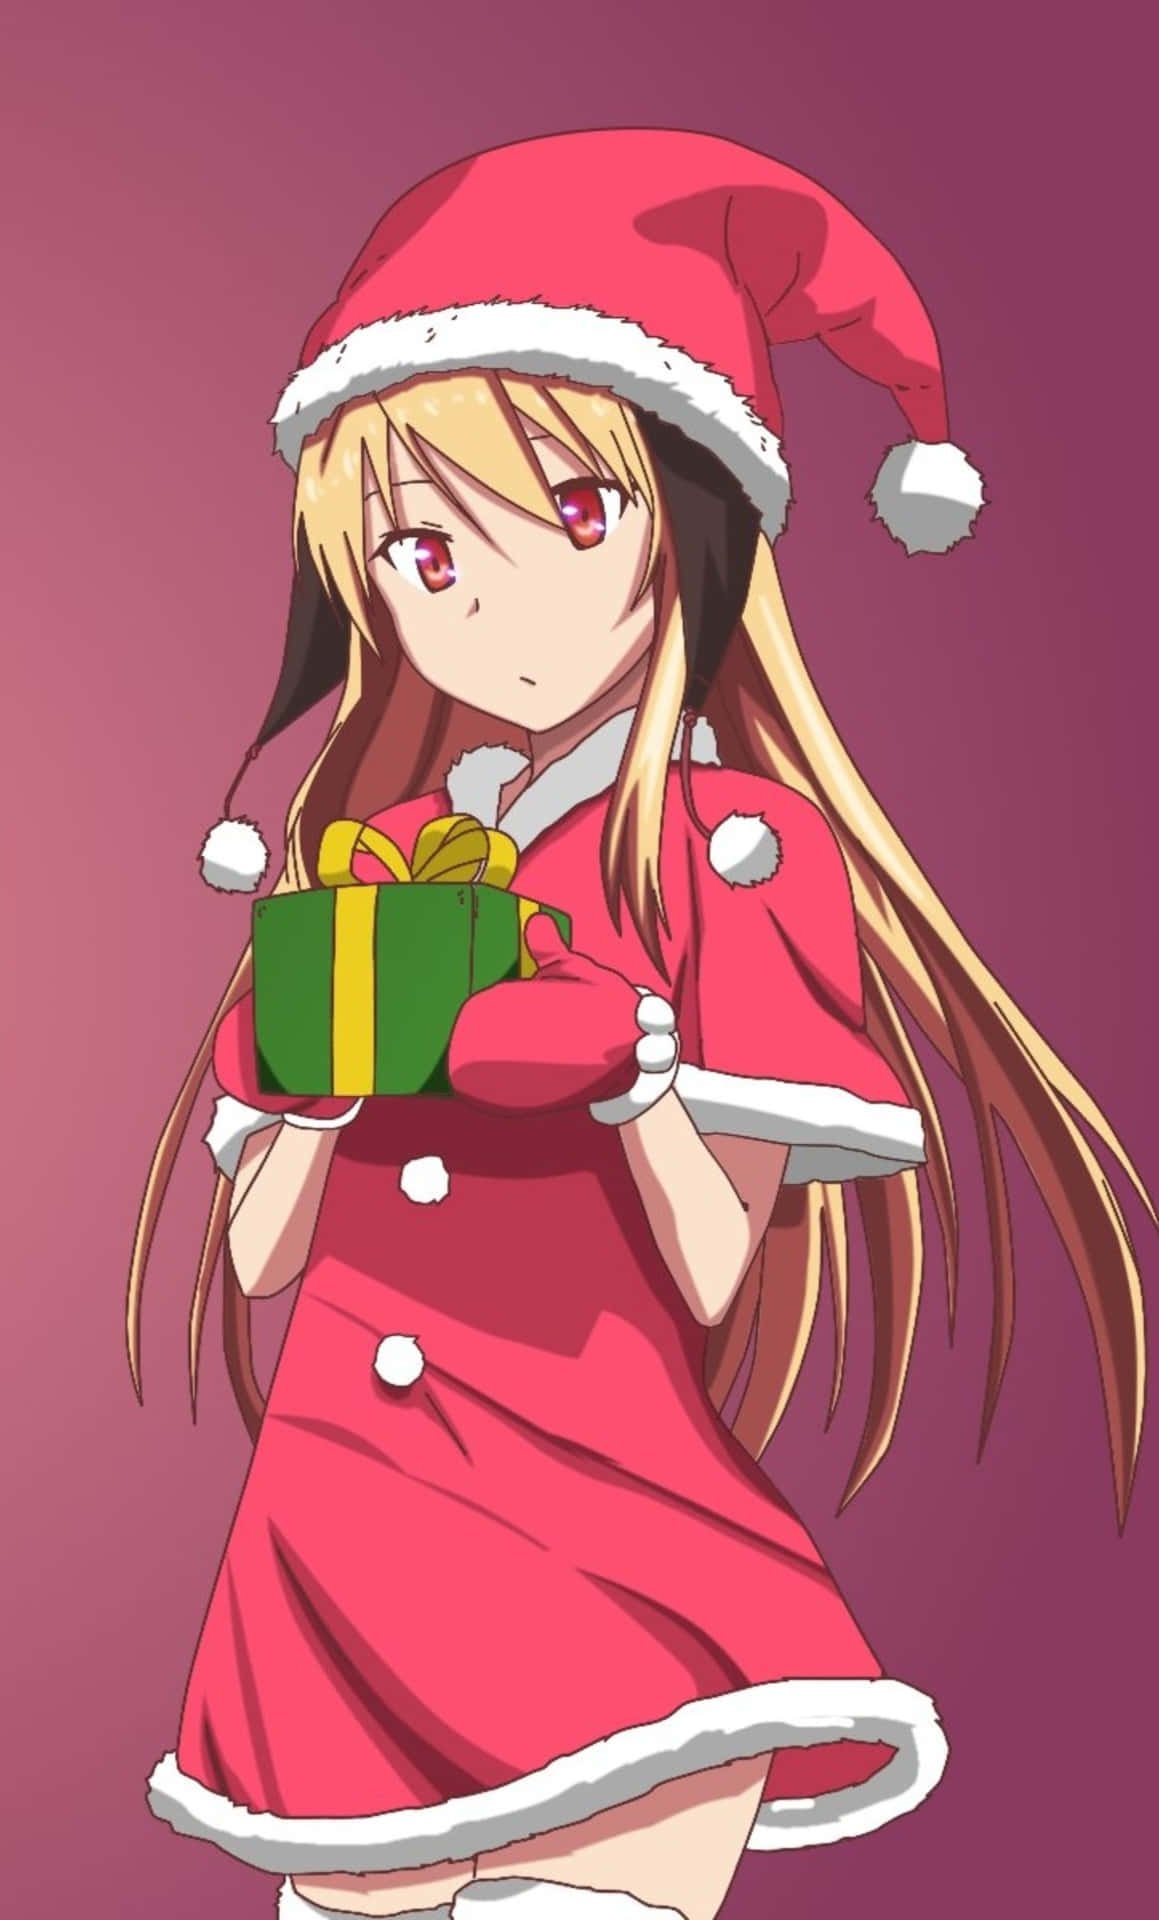 Download Christmas Anime PNG Image High Quality HQ PNG Image | FreePNGImg